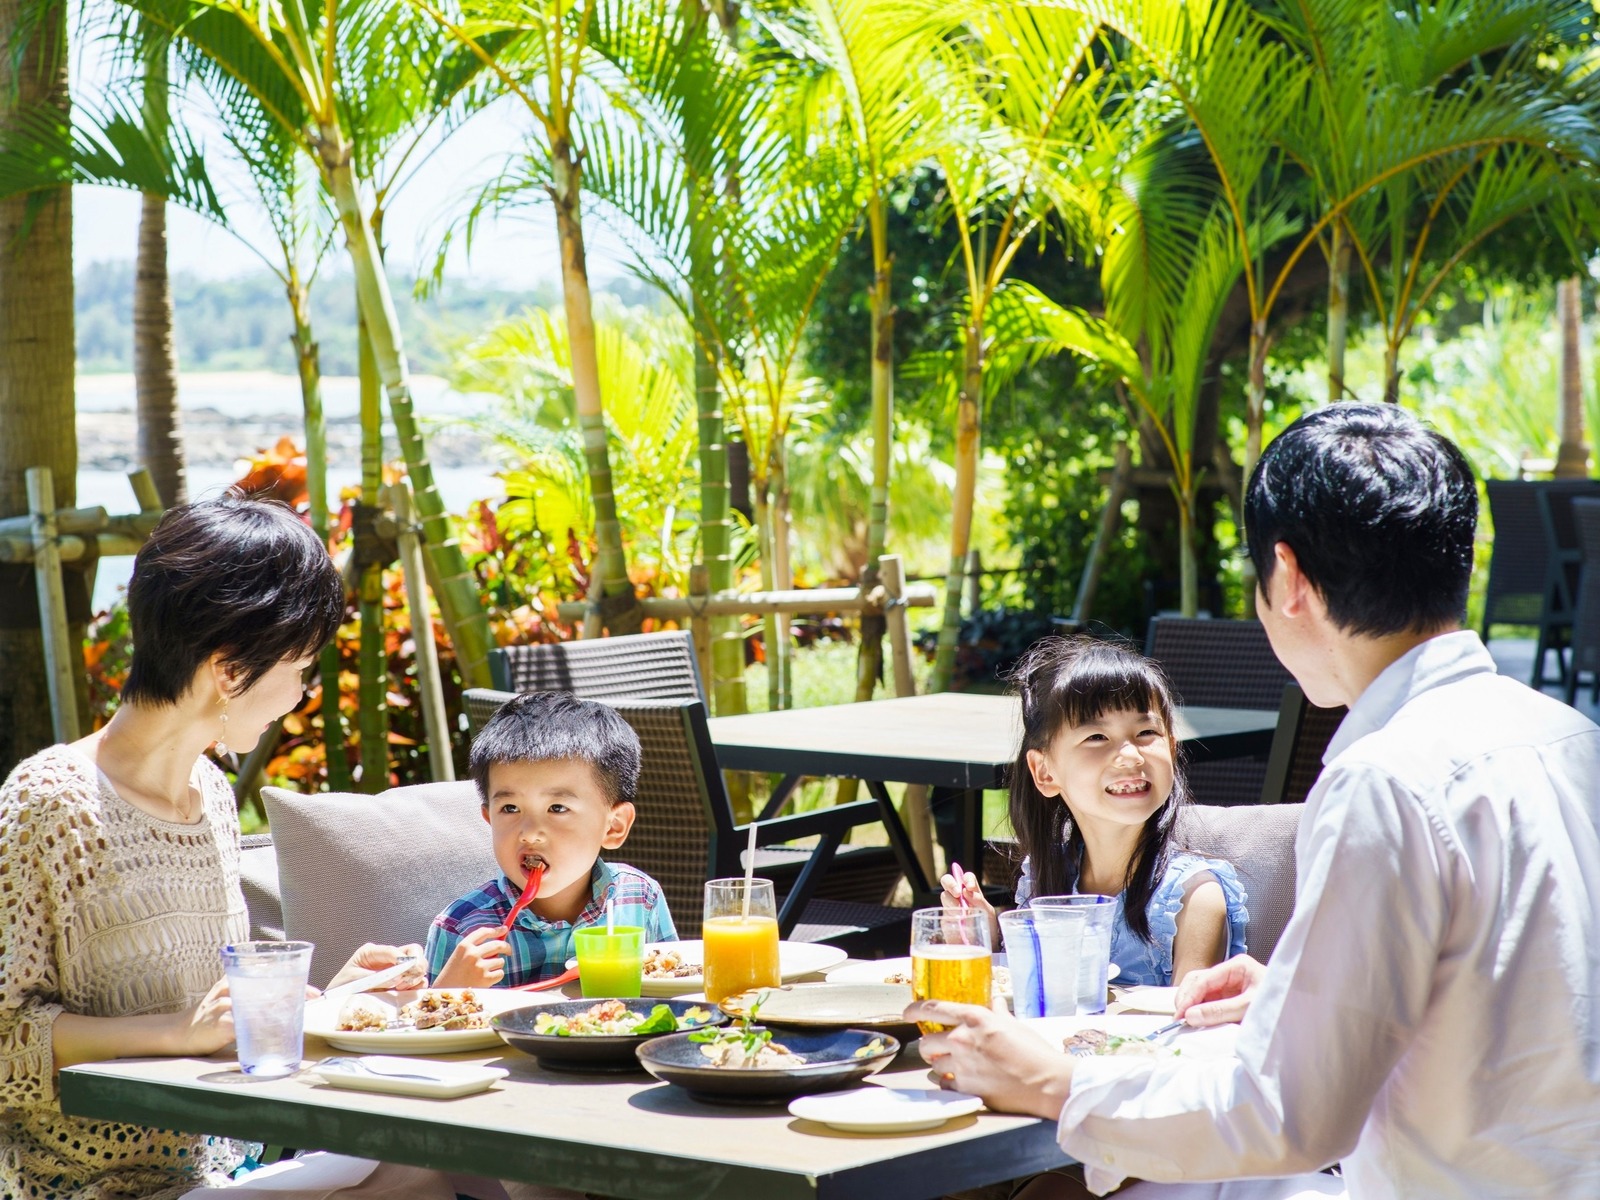 瀬良垣ビーチを眺めながら、リゾートならではの朝食を満喫頂けます。